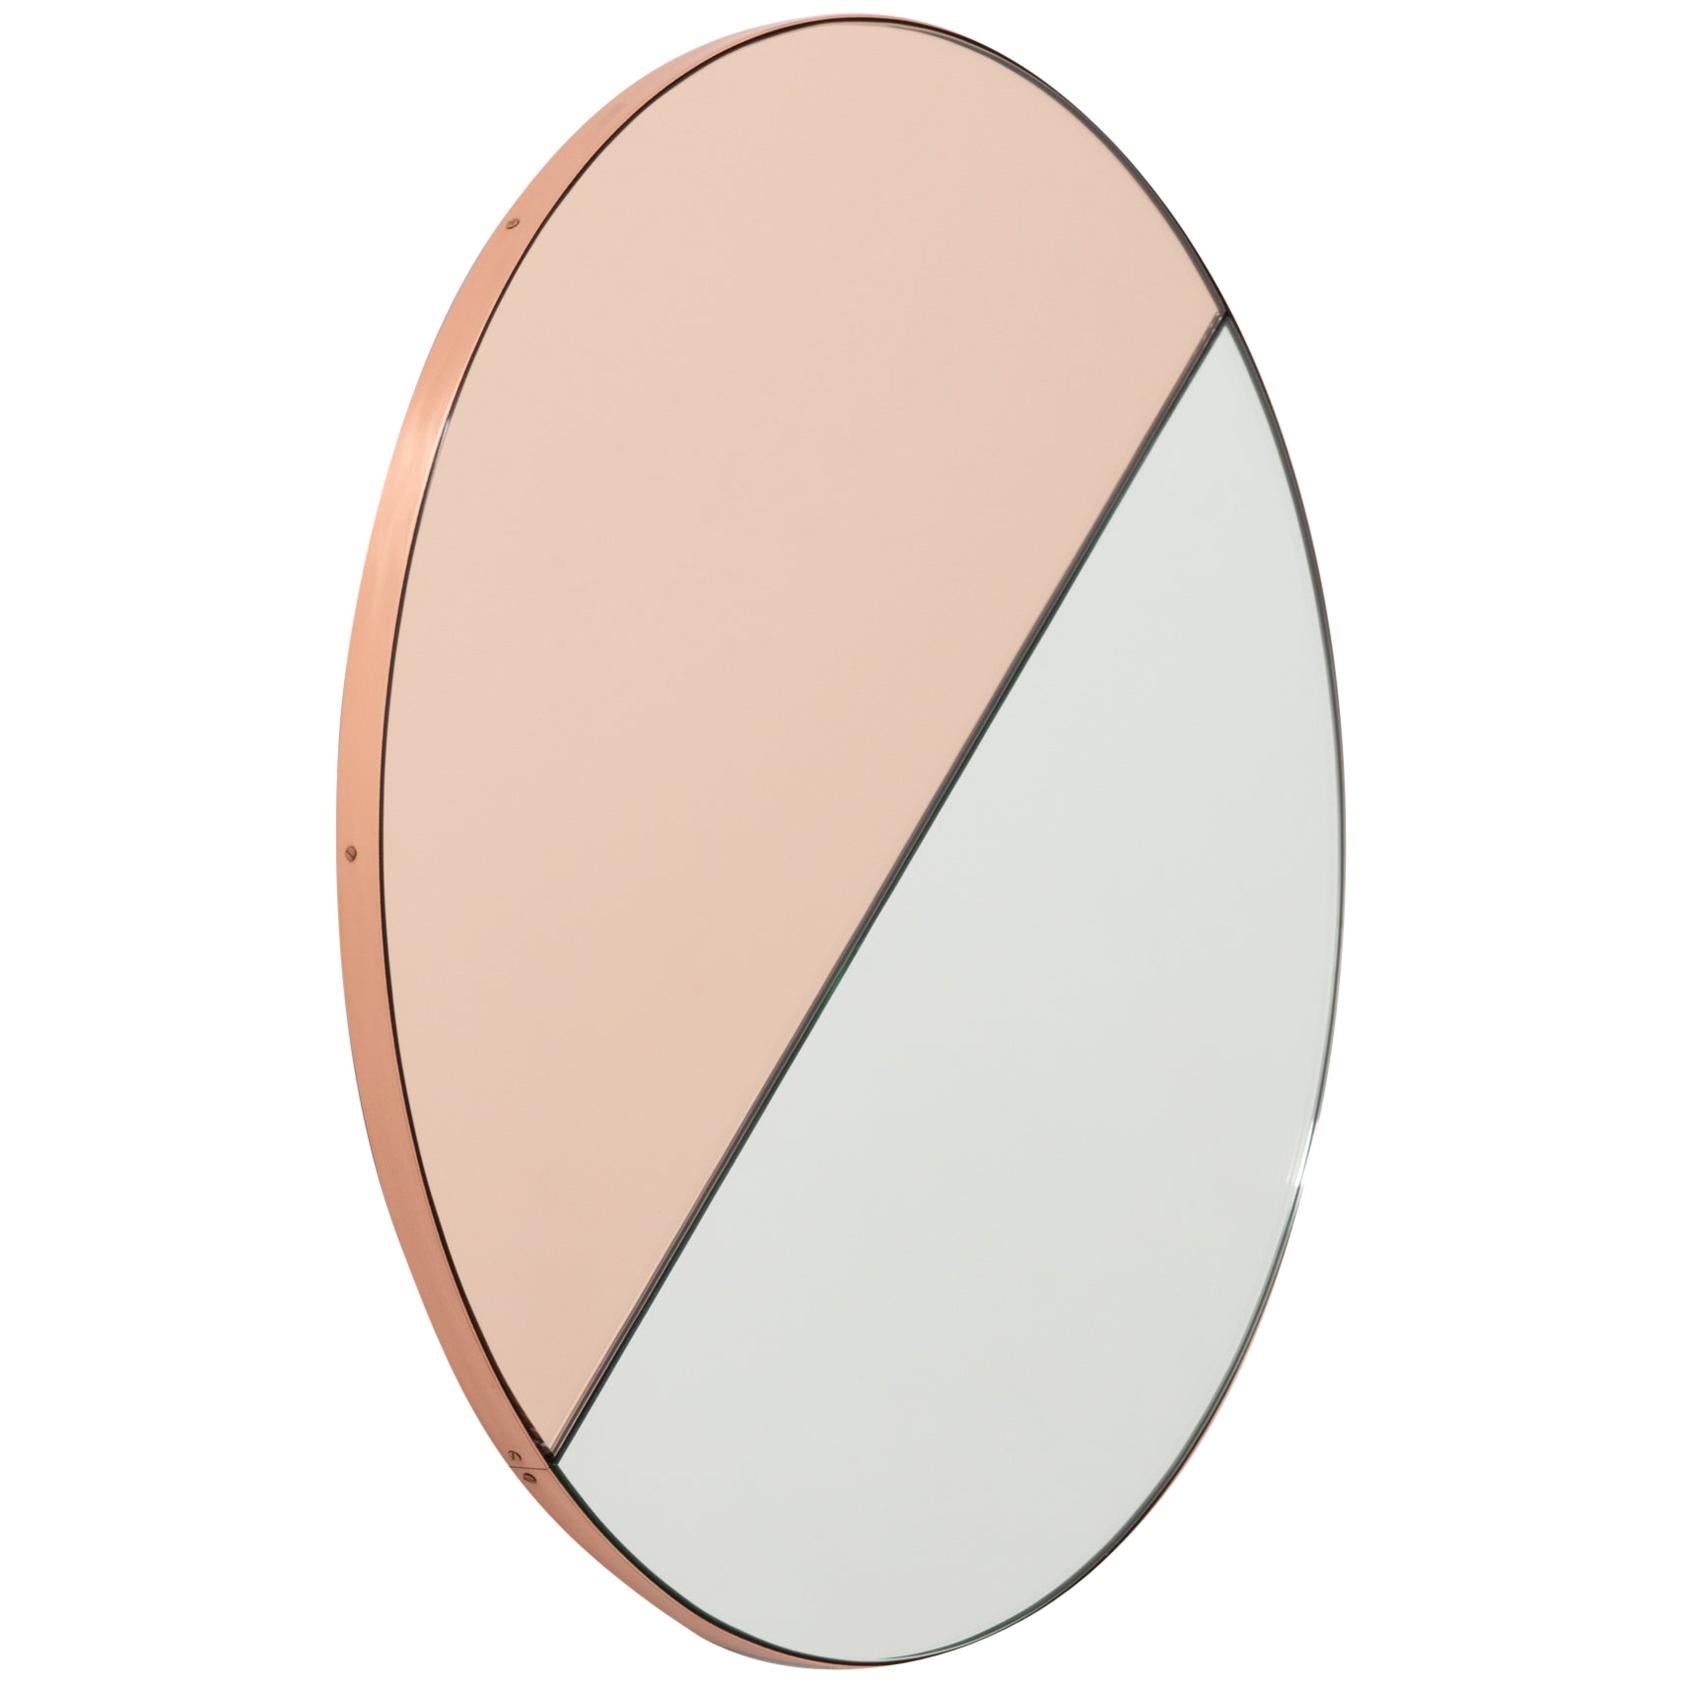 Miroir rond Orbis Dualis couleur pêche avec cadre en cuivre, en stock